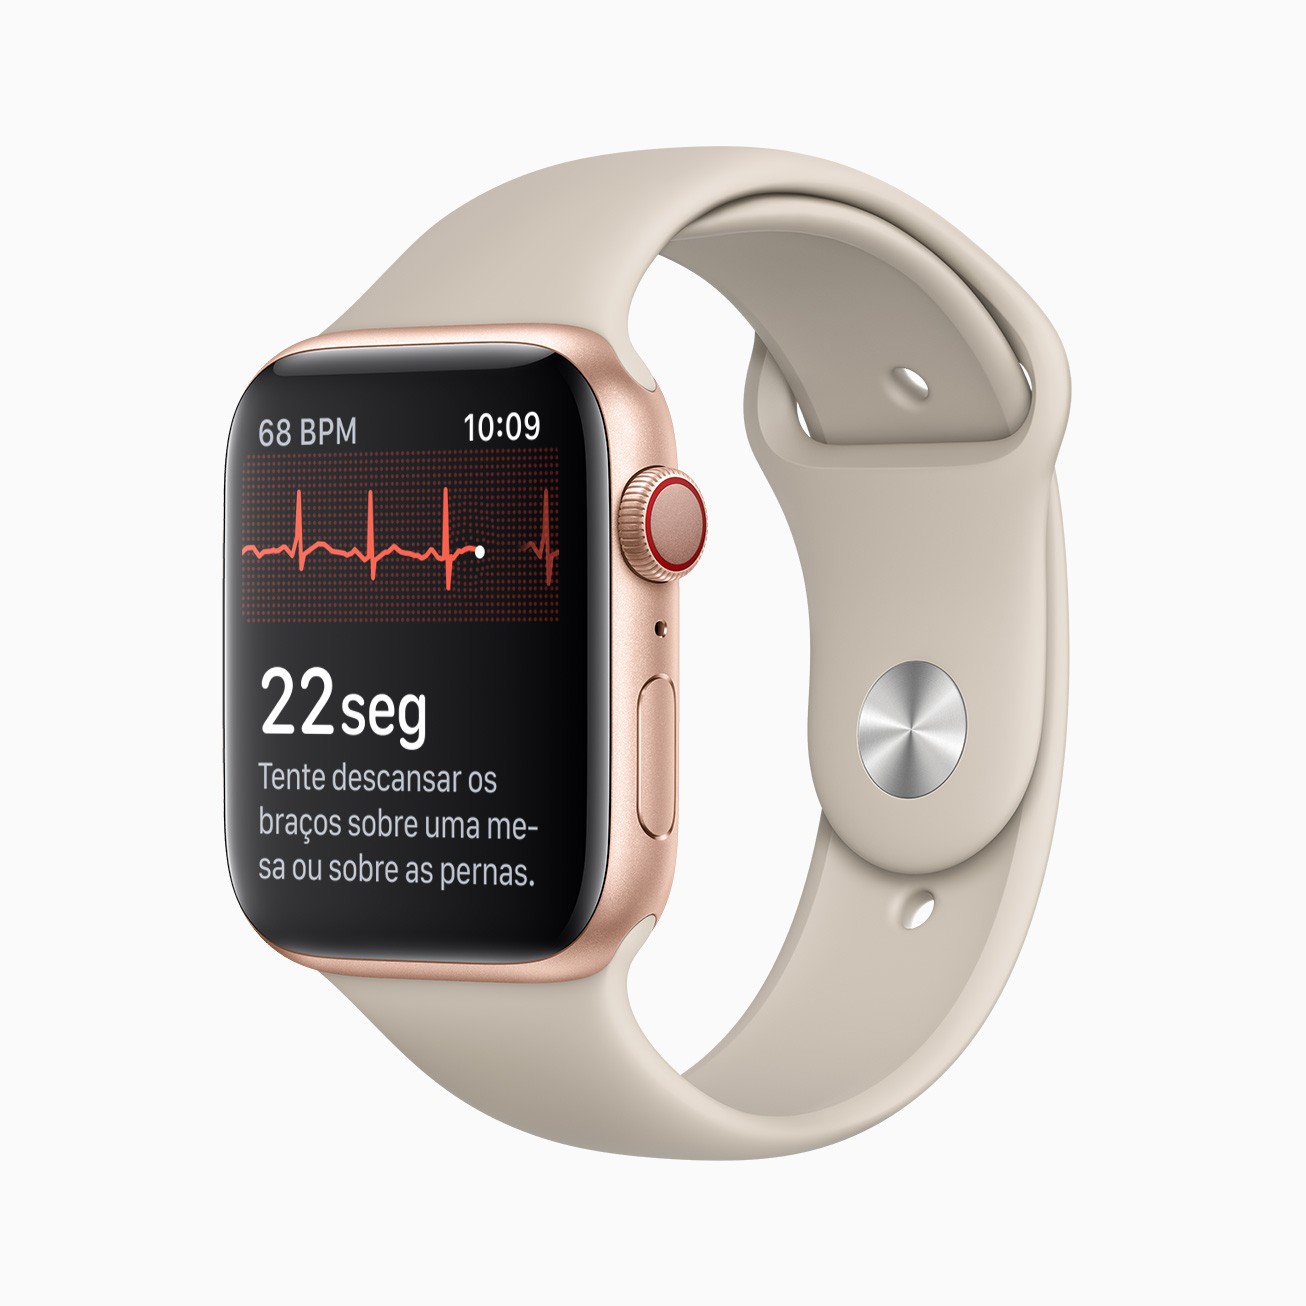 Tocar na Digital Crown do Apple Watch Series 4 e posteriores completa o circuito, medindo os impulsos elétricos do coração. (Foto: Divulgação/Apple)